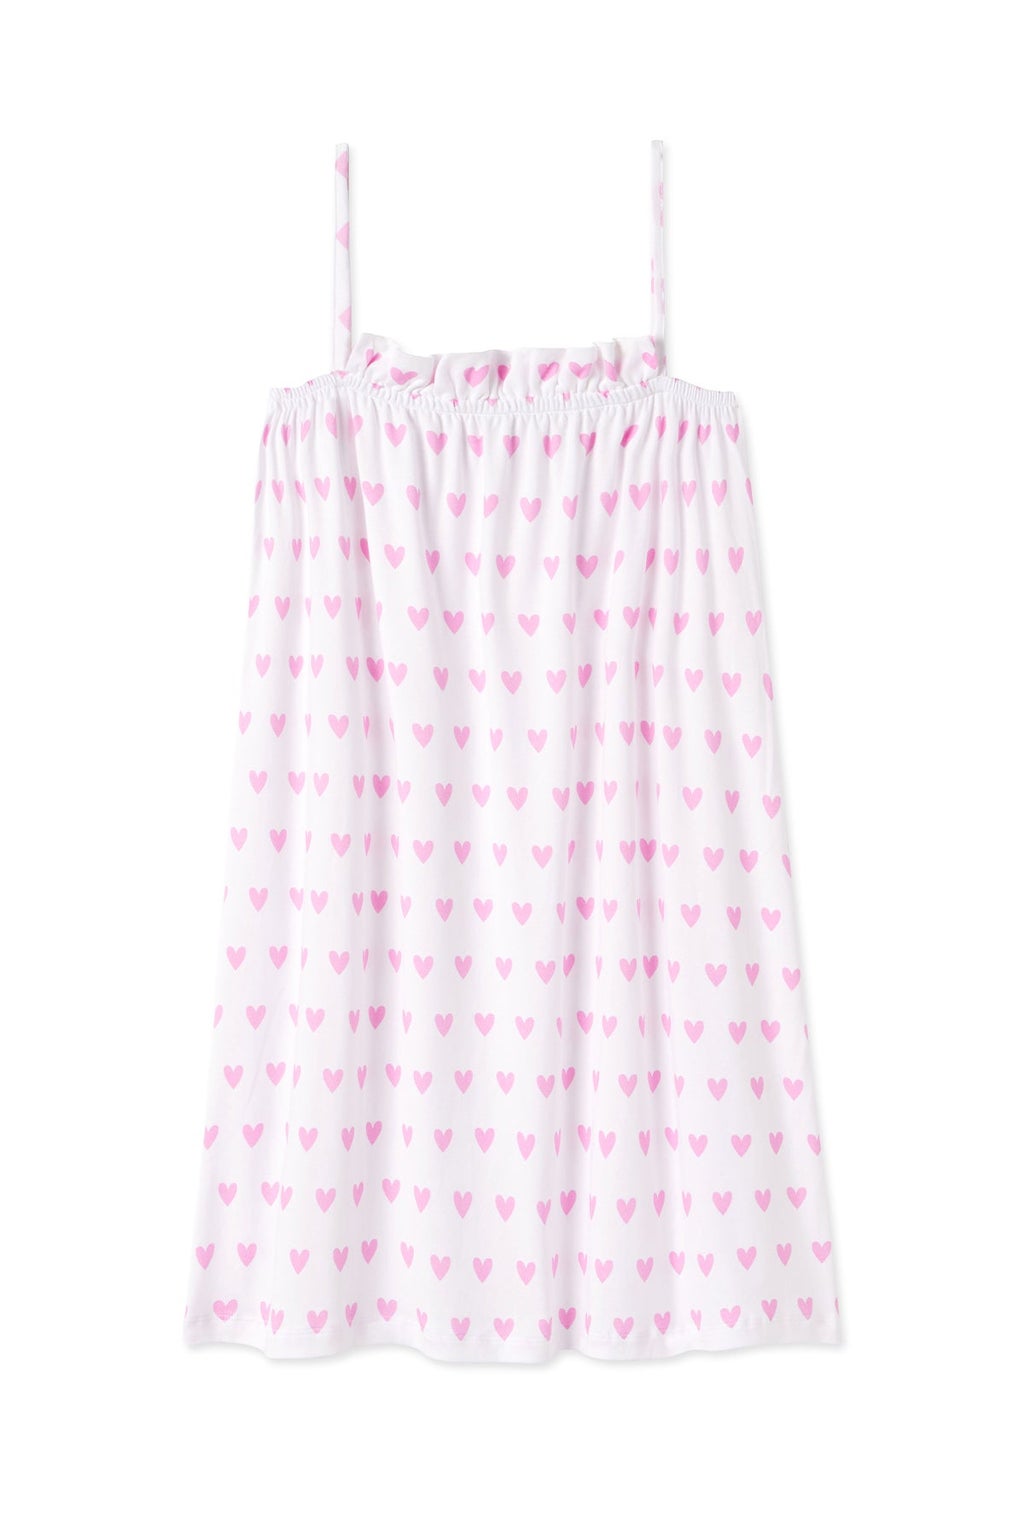 Pima Ruffle Nightgown in Pink Heart